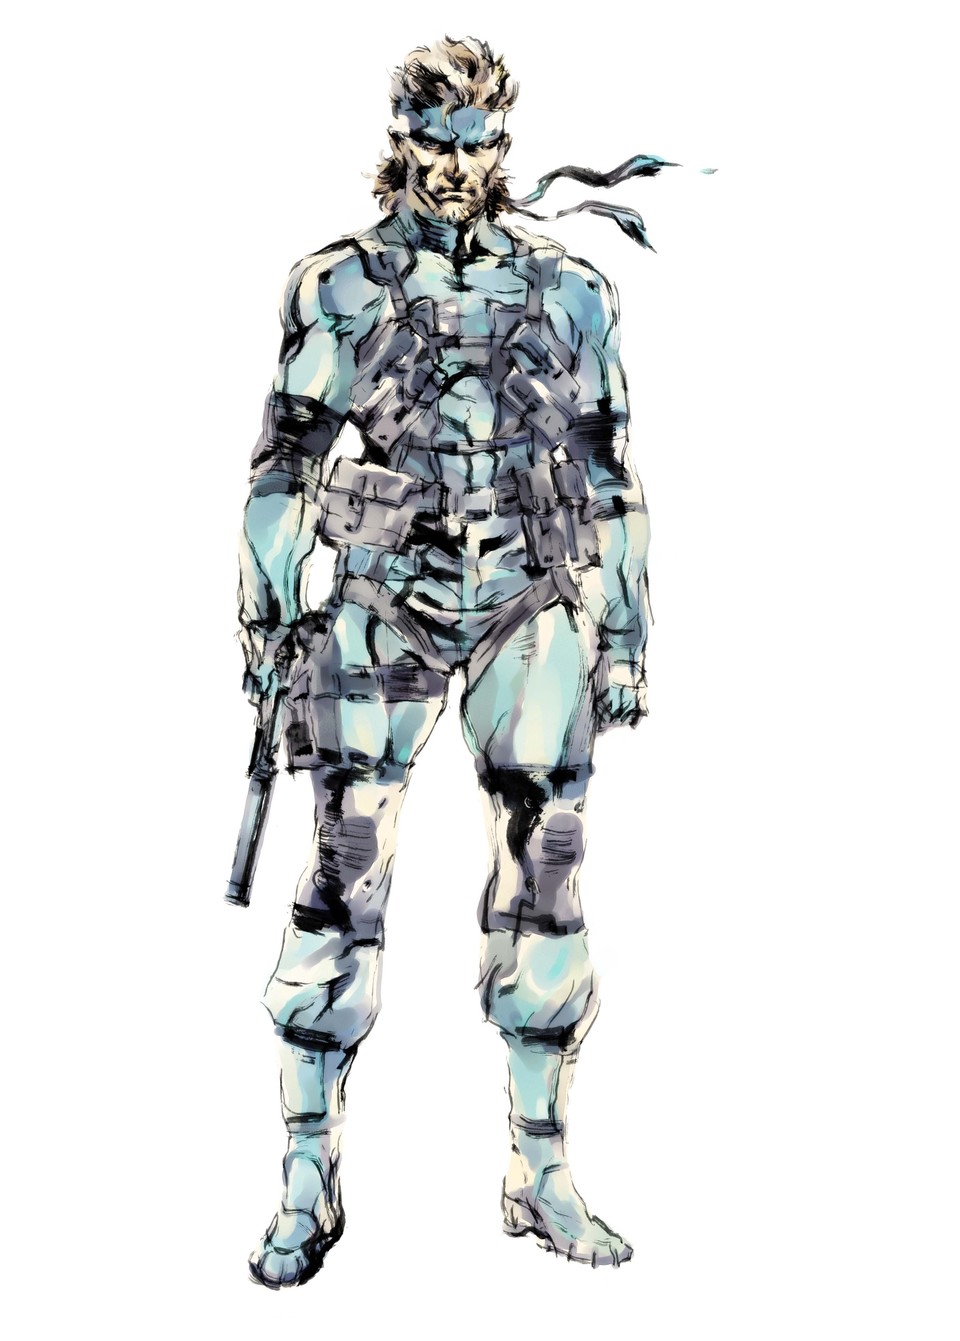 Solid Snake ist wahrscheinlich die bekannteste Figur der Metal-Gear-Serie. Er war aber nicht in allen Serienteilen der Hauptdarsteller oder überhaupt dabei.